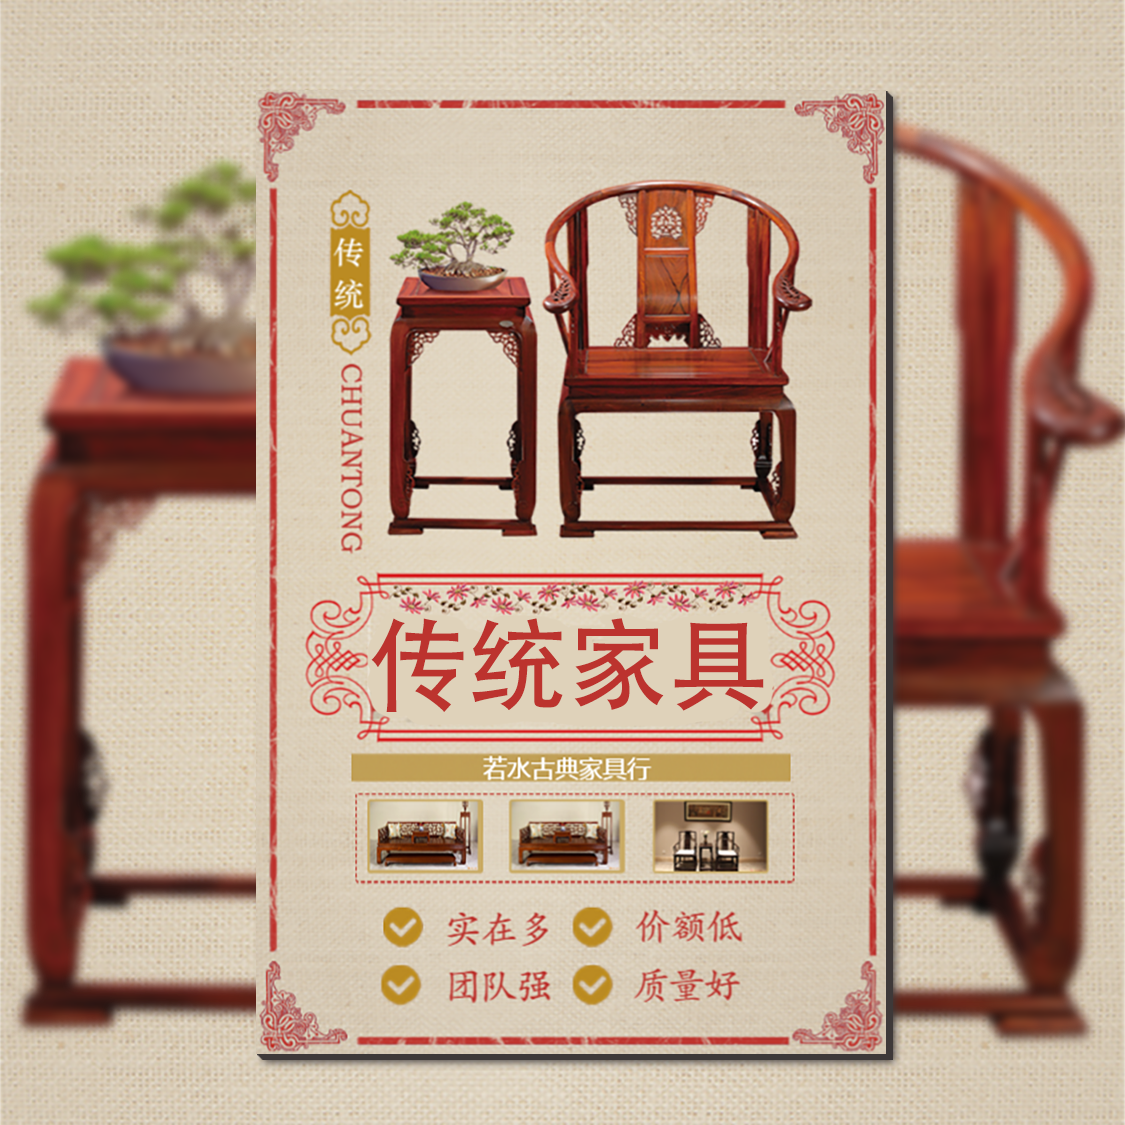 传统家具红木家具高端家具中国风古典家具缅甸红木实木家具衣柜